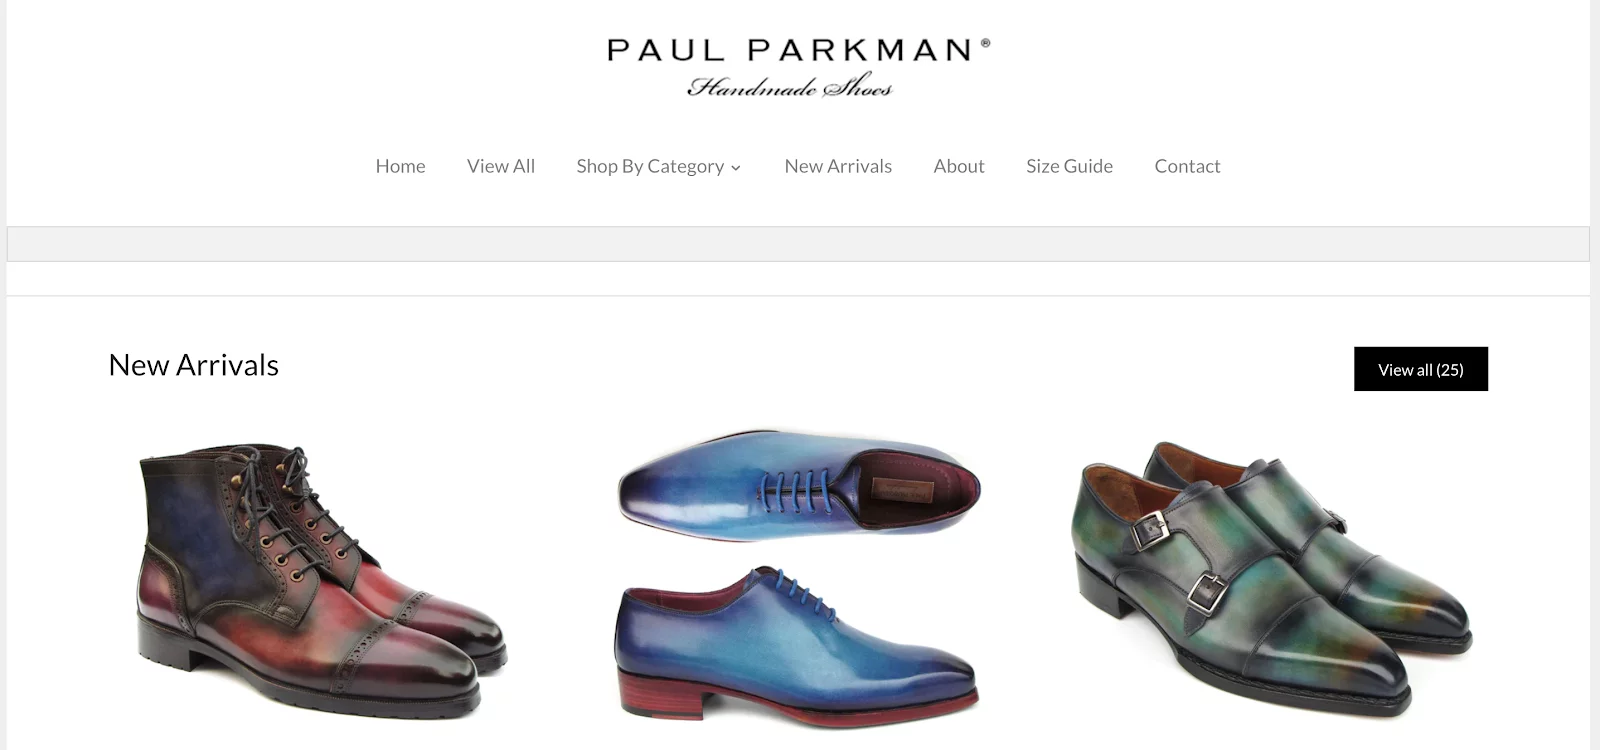 Dropshipping Shoe Suppliers - Paul Parkman